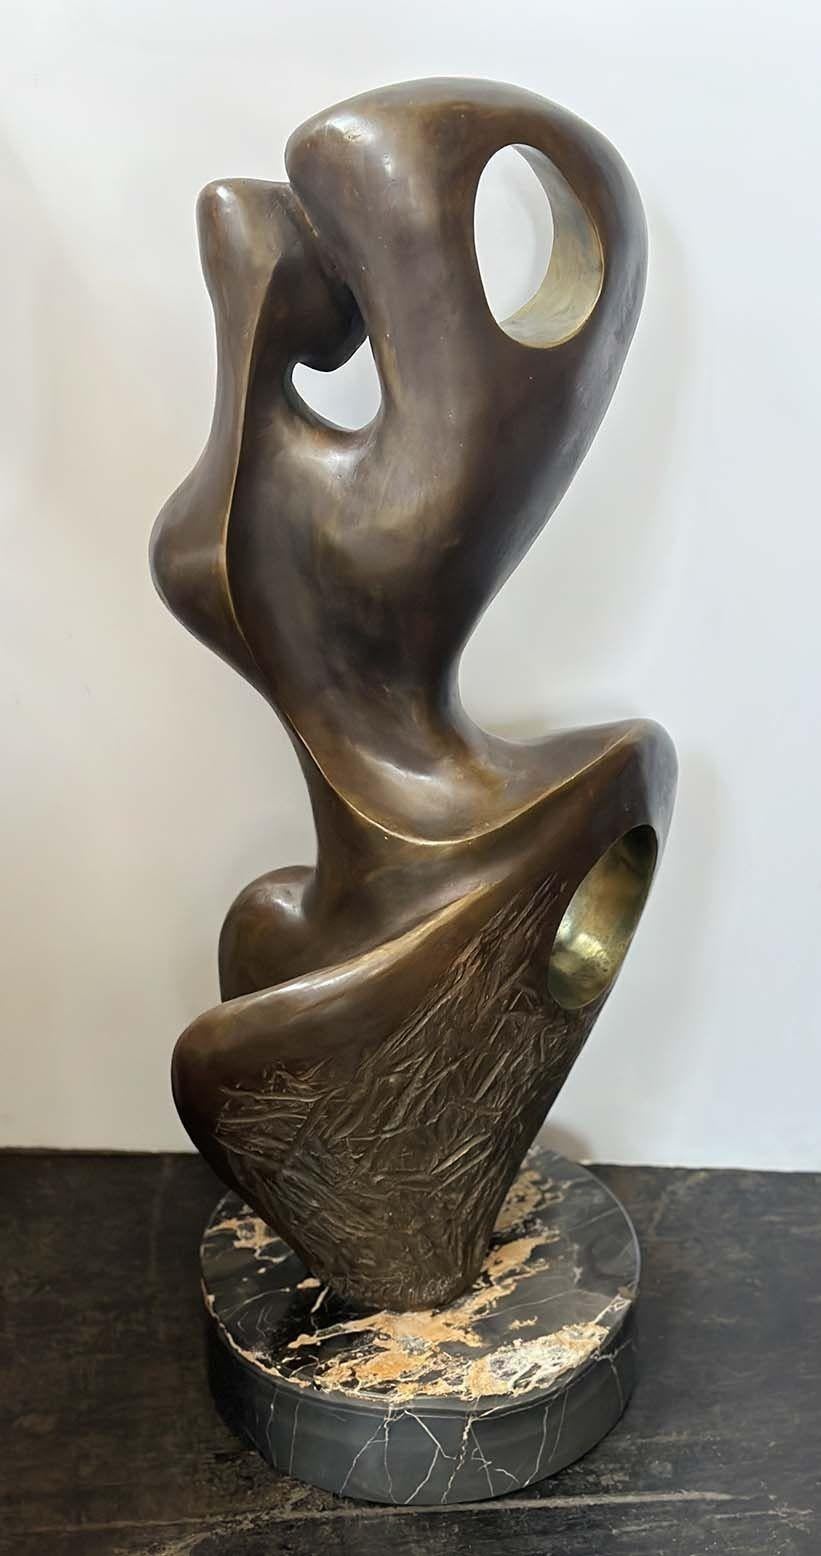 Sculpture suisse vintage en bronze de qualité représentant une figure abstraite avec de nombreux détails tout autour, se tenant gracieusement sur une base ronde en marbre noir veiné.
*Signé et daté par Jean-Jacques Porret (1986).
*Numéroté